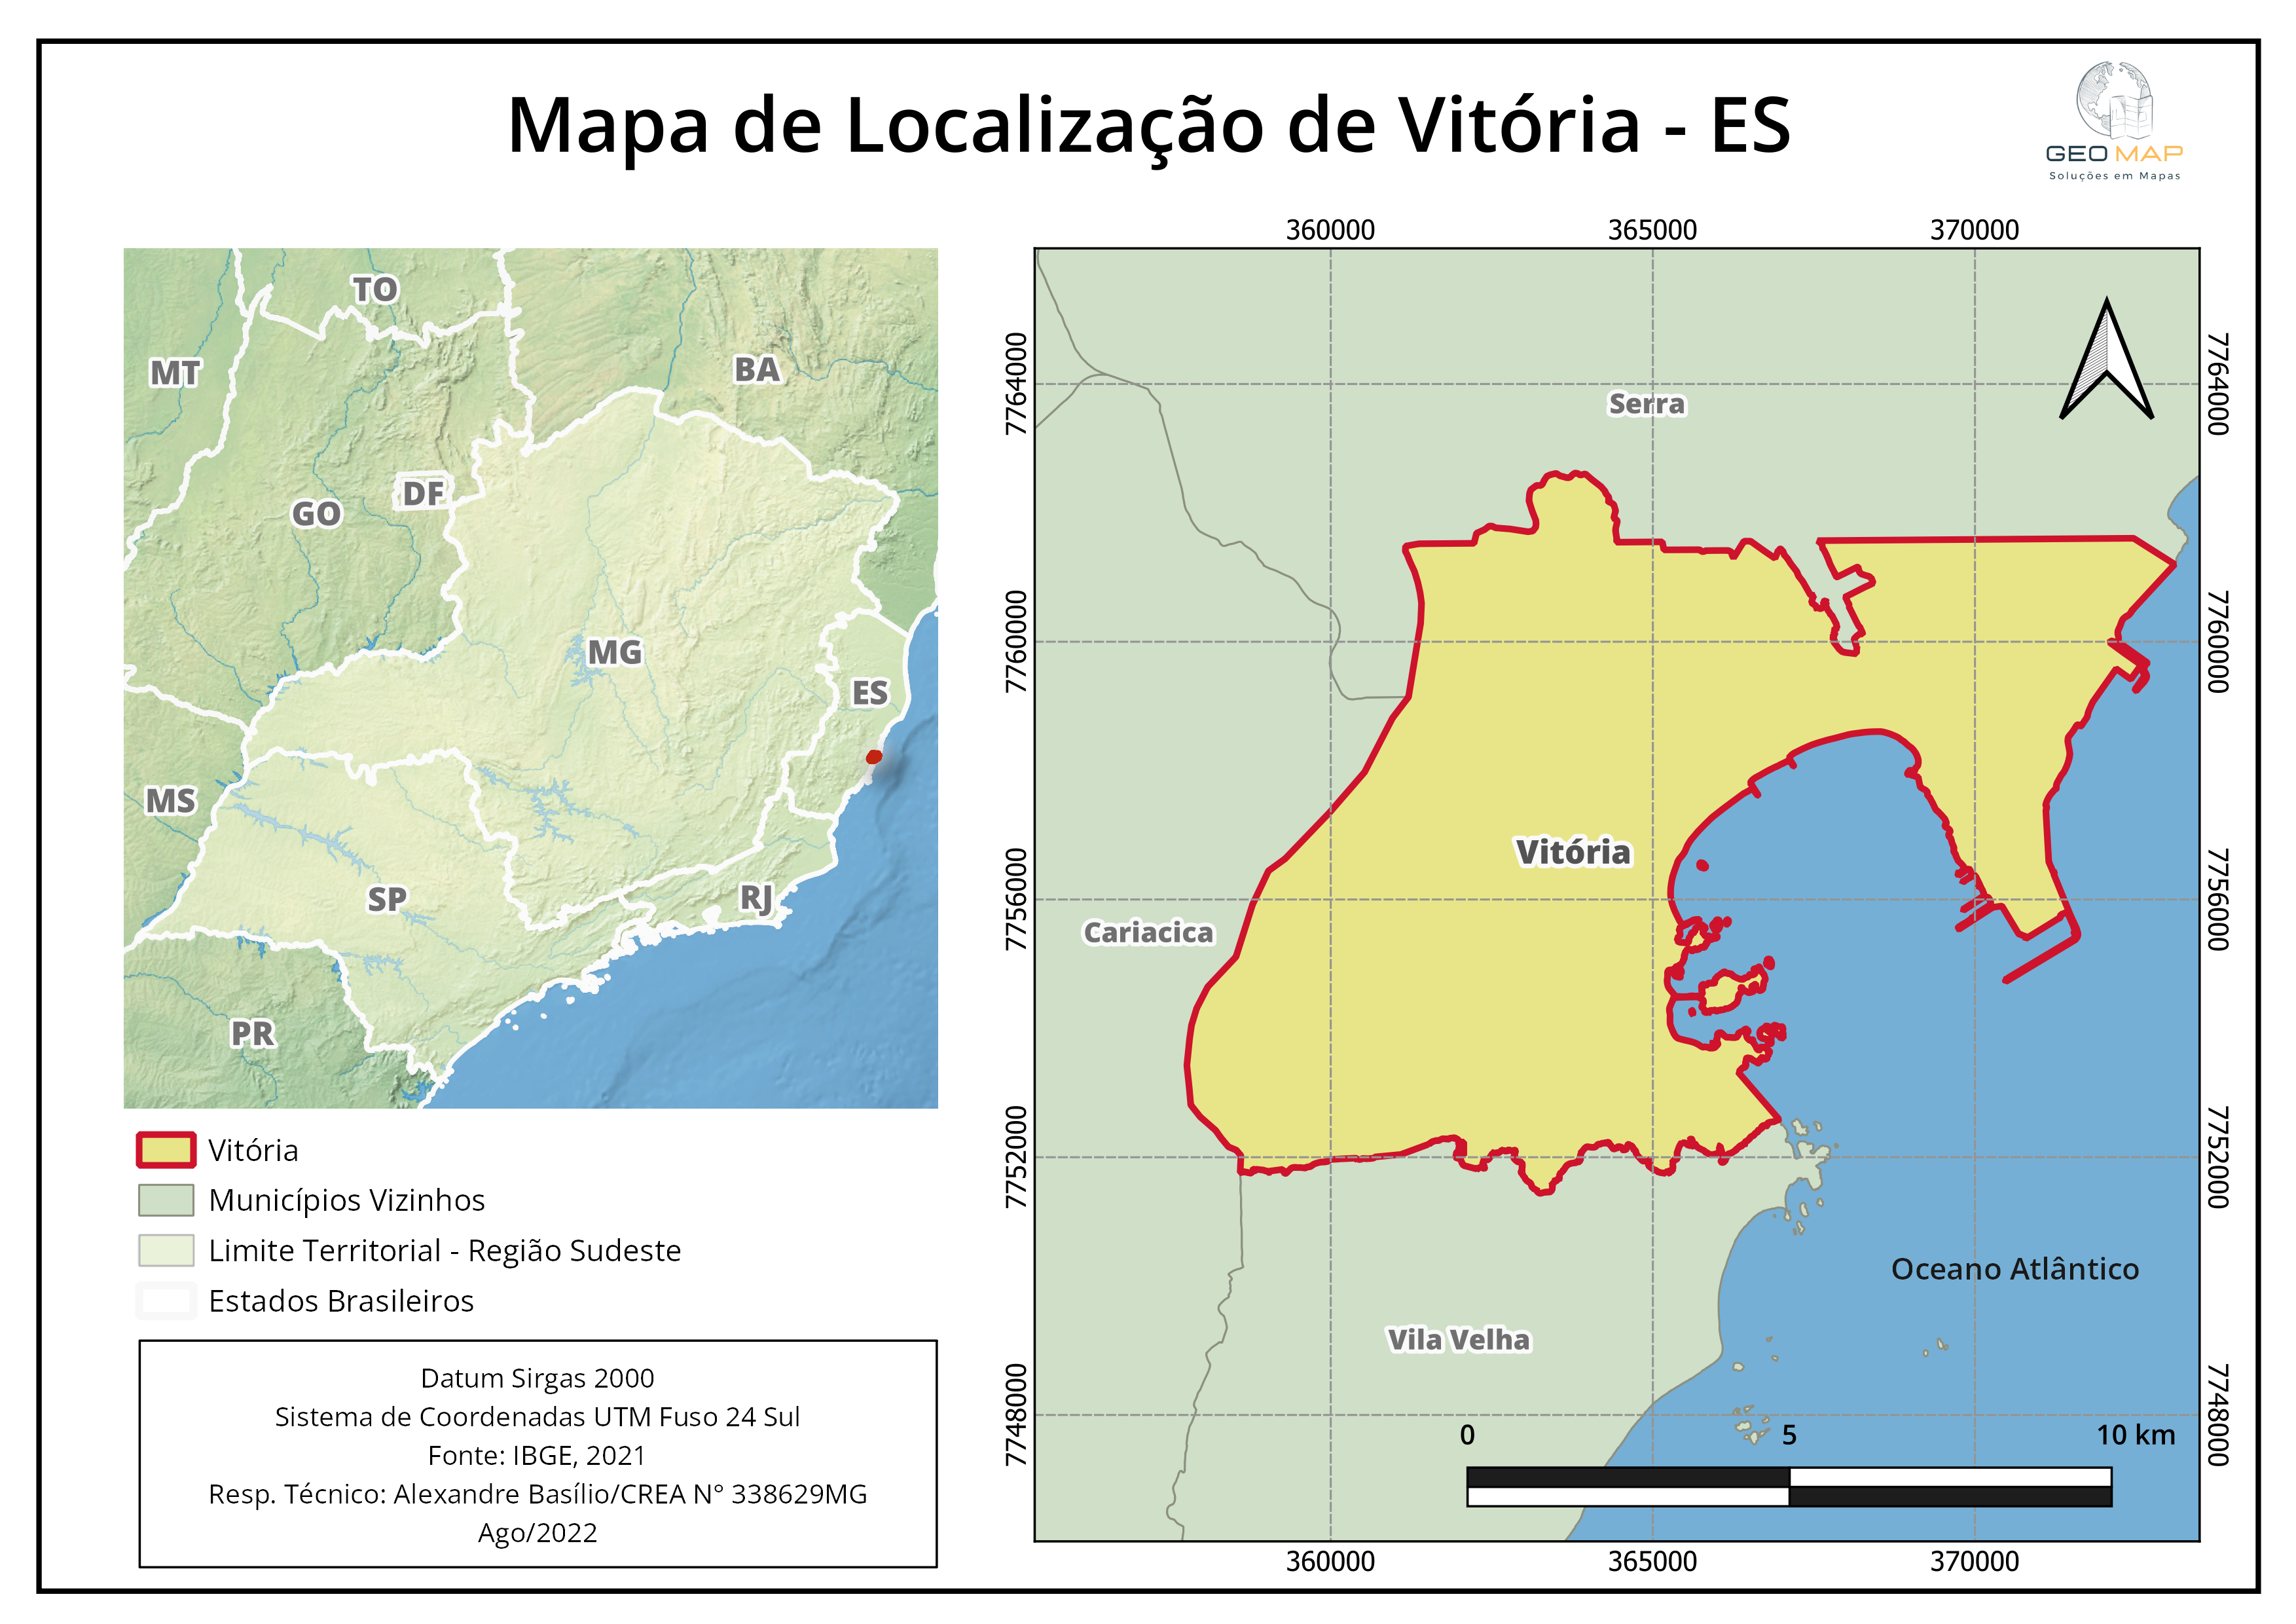 Mapa de Localização Vitória - ES